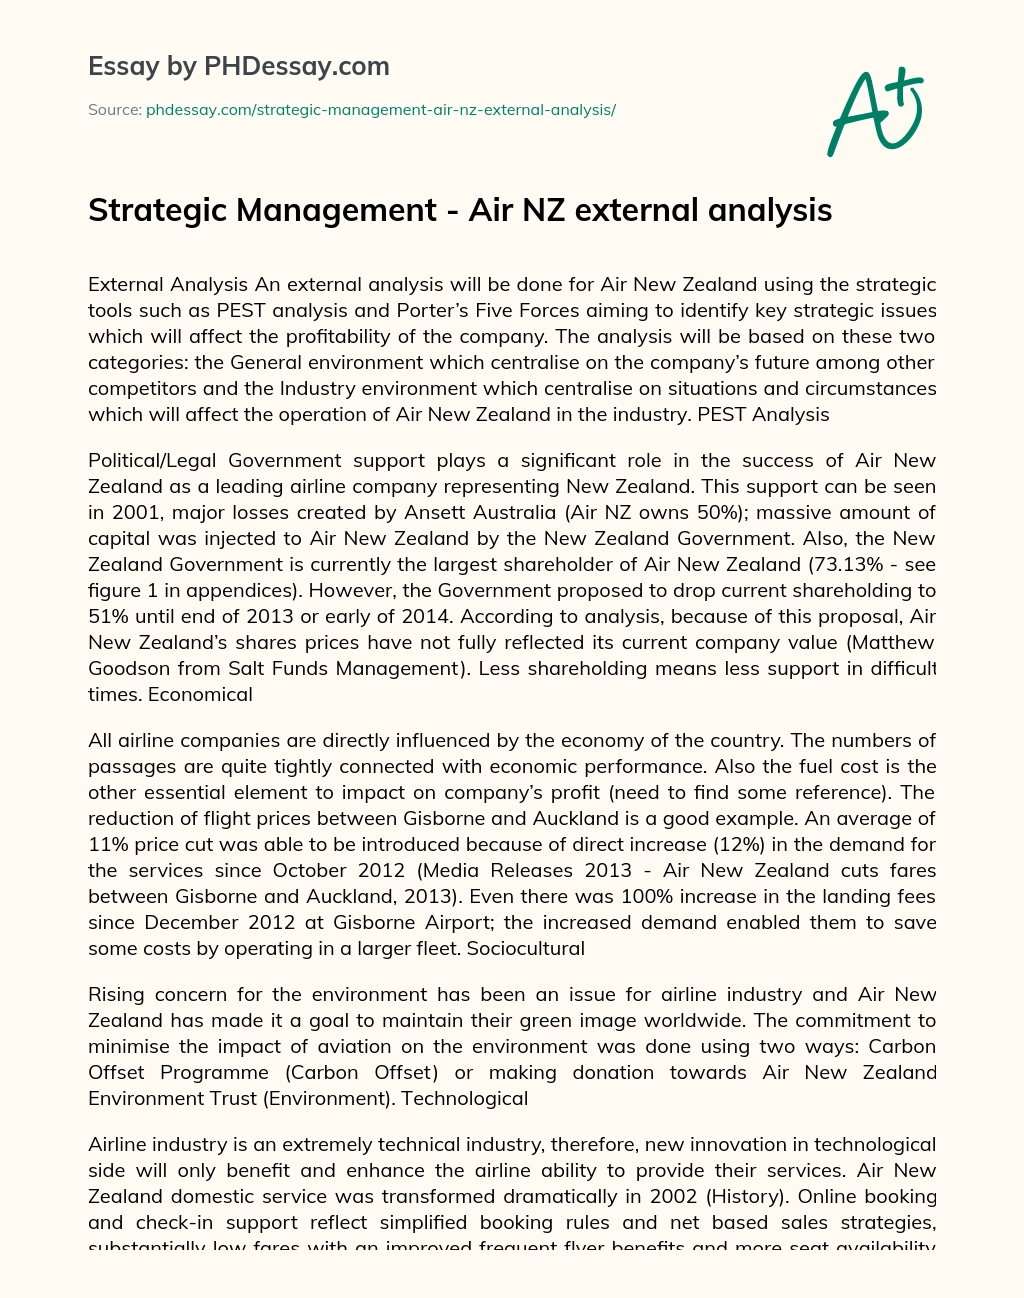 Strategic Management – Air NZ External Analysis essay